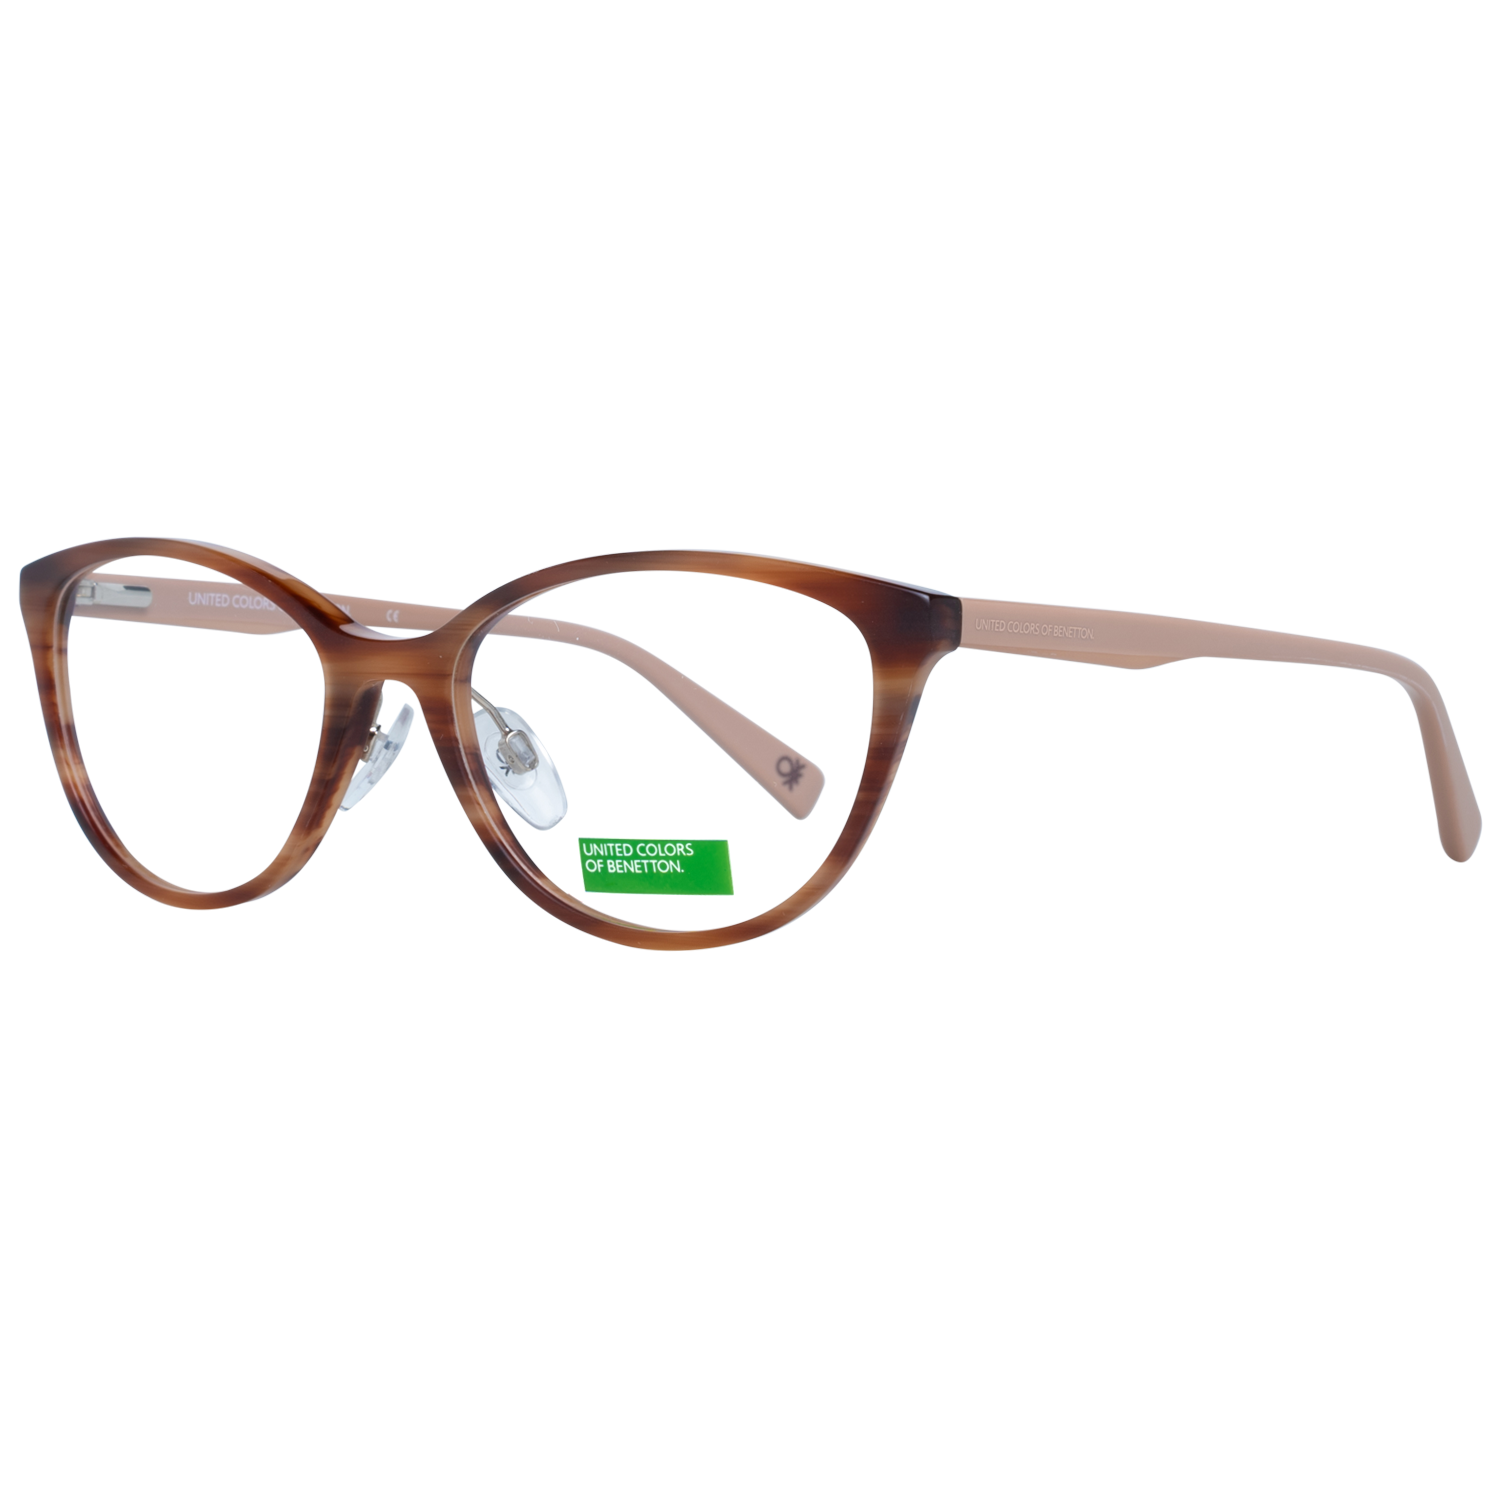 Benetton Frames Benetton Glasses Frames BEO1004 151 53 Eyeglasses Eyewear UK USA Australia 